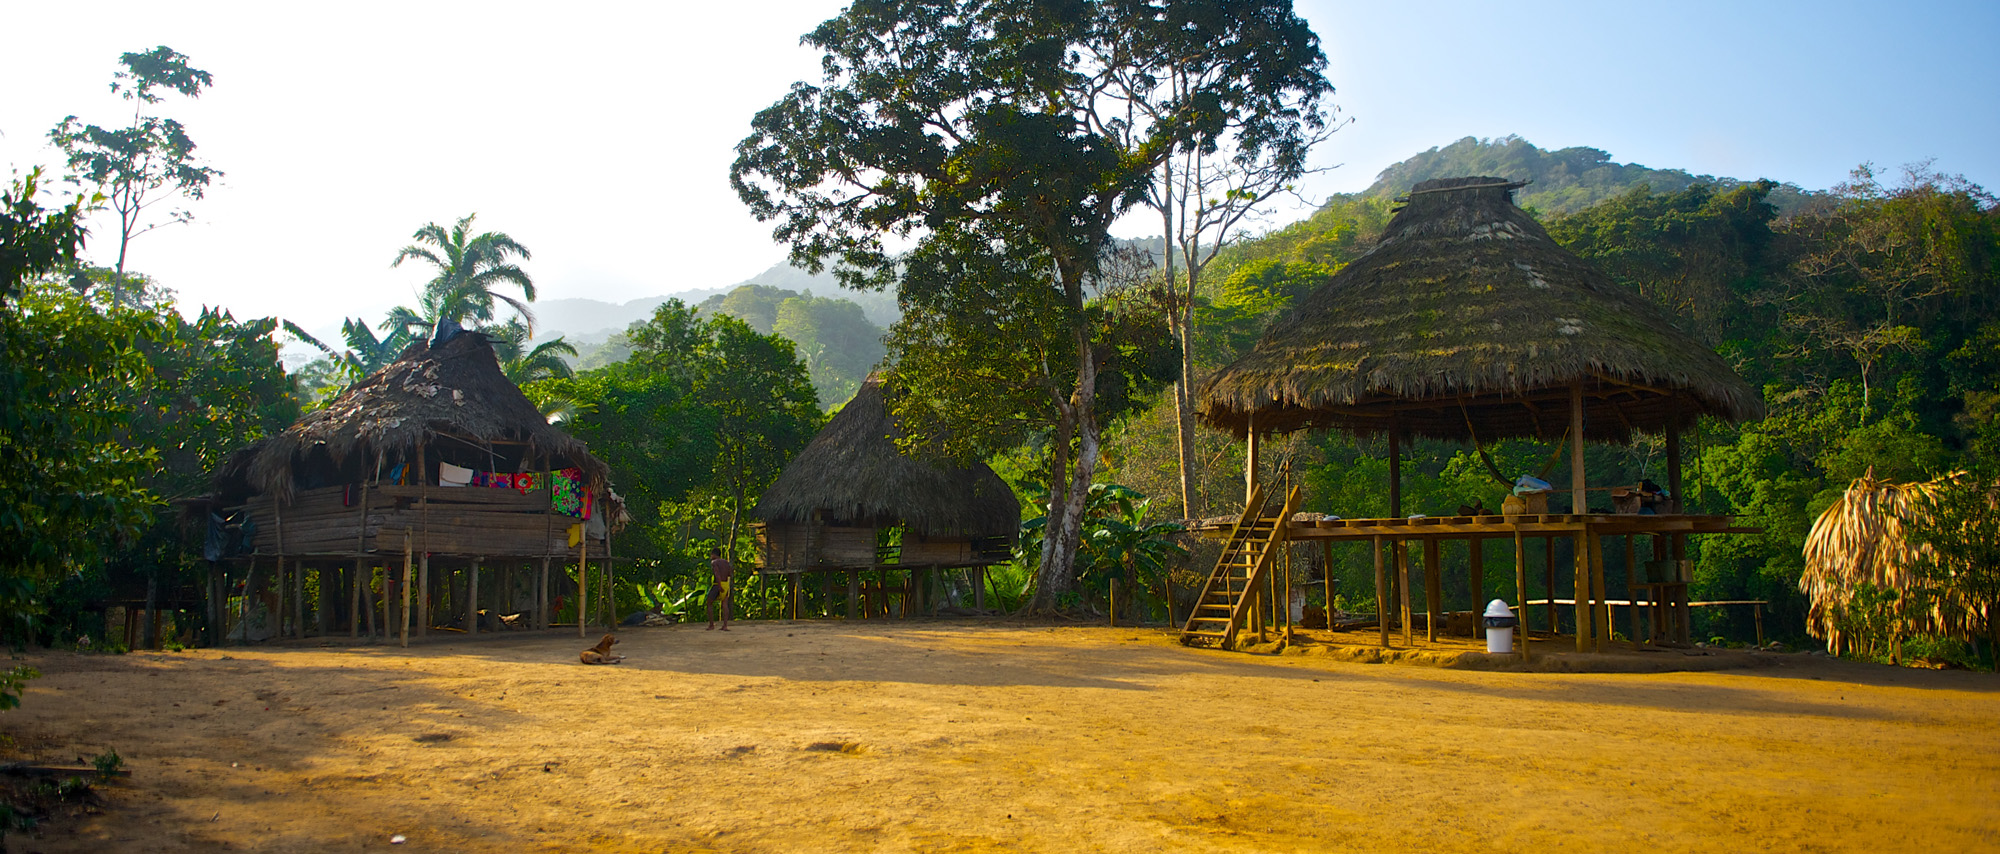 Embera Puru, a free state